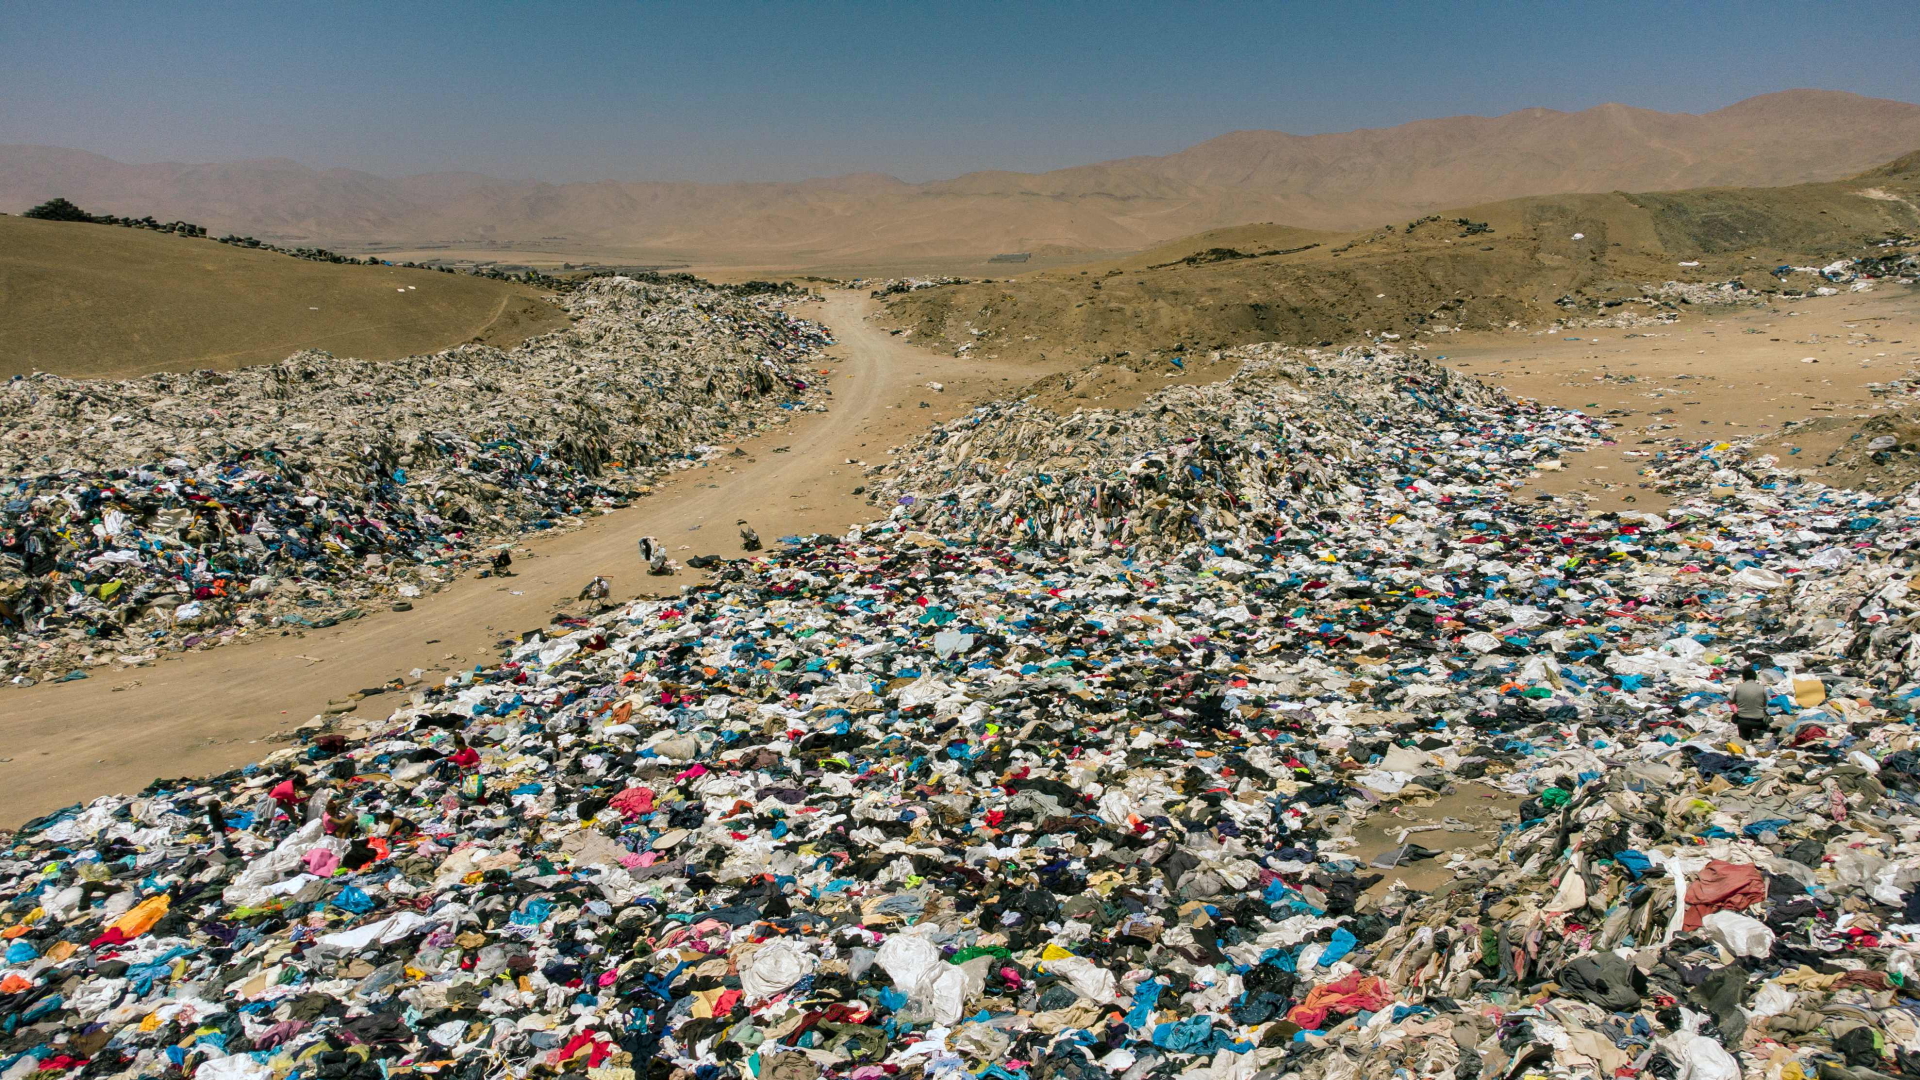 Berge von alter Kleidung liegen in der Atacama-Wüste  in Chile. | AFP